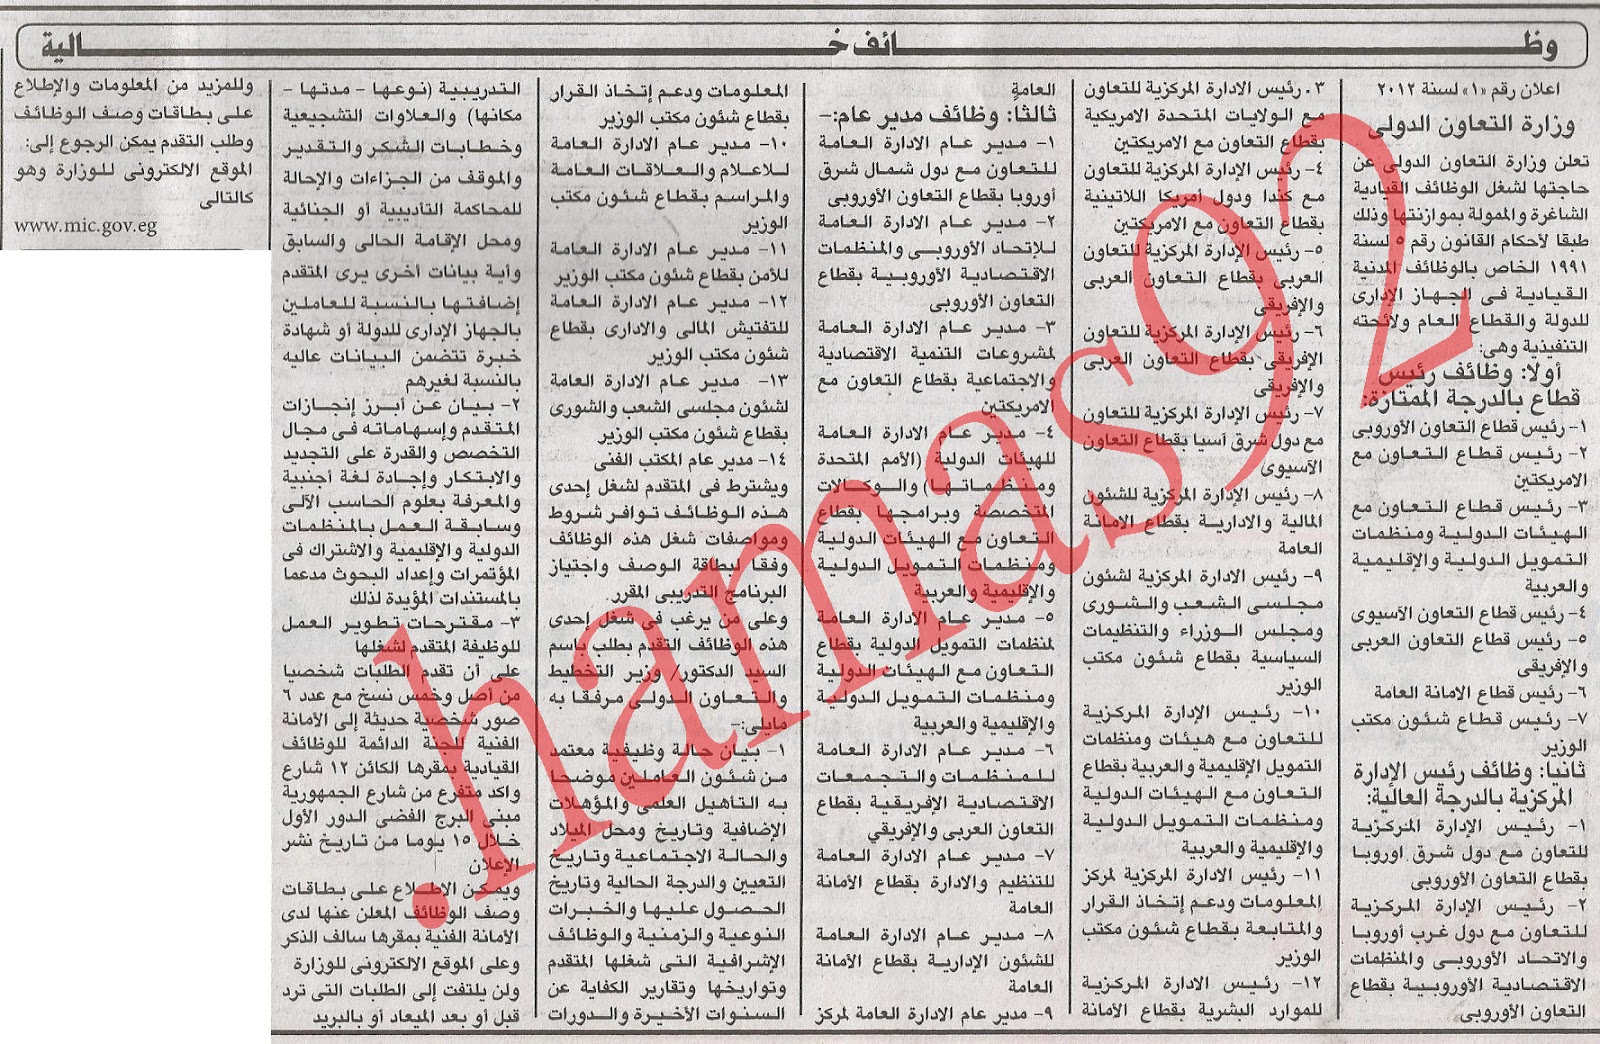 اعلانات وظائف خالية من جريدة الاهرام الاثنين 1\10\2012 الاهرام 2